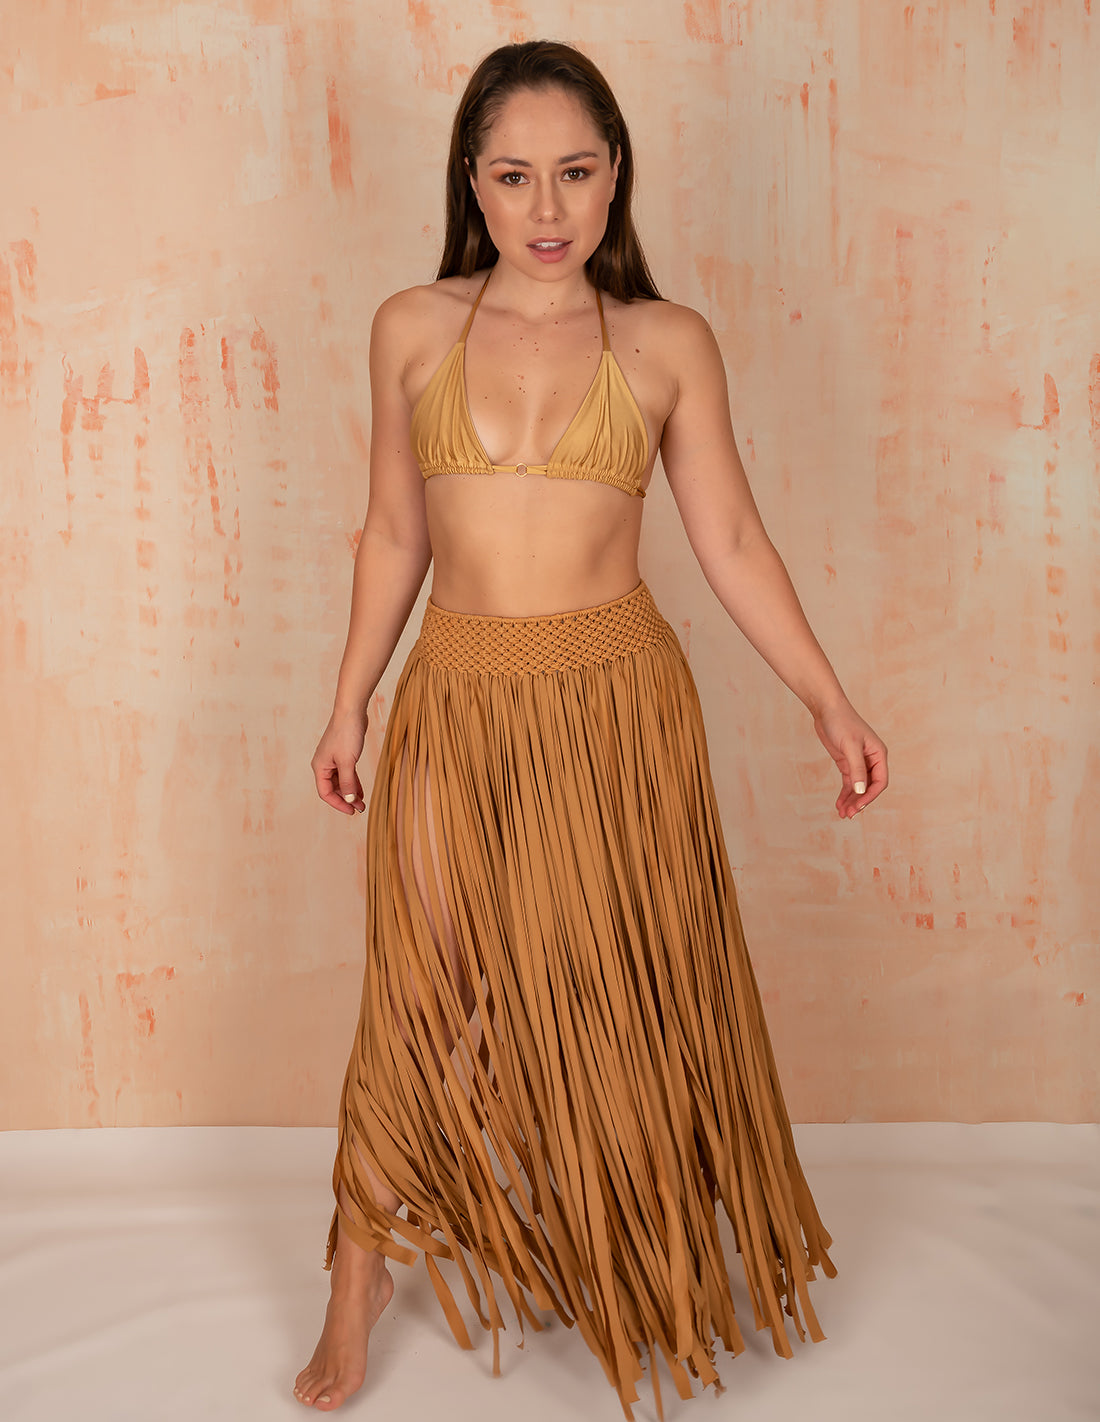 Flow Skirt Golden. Hand-Dyed Beach Skirt With Hand Woven Macramé In Golden. Entreaguas